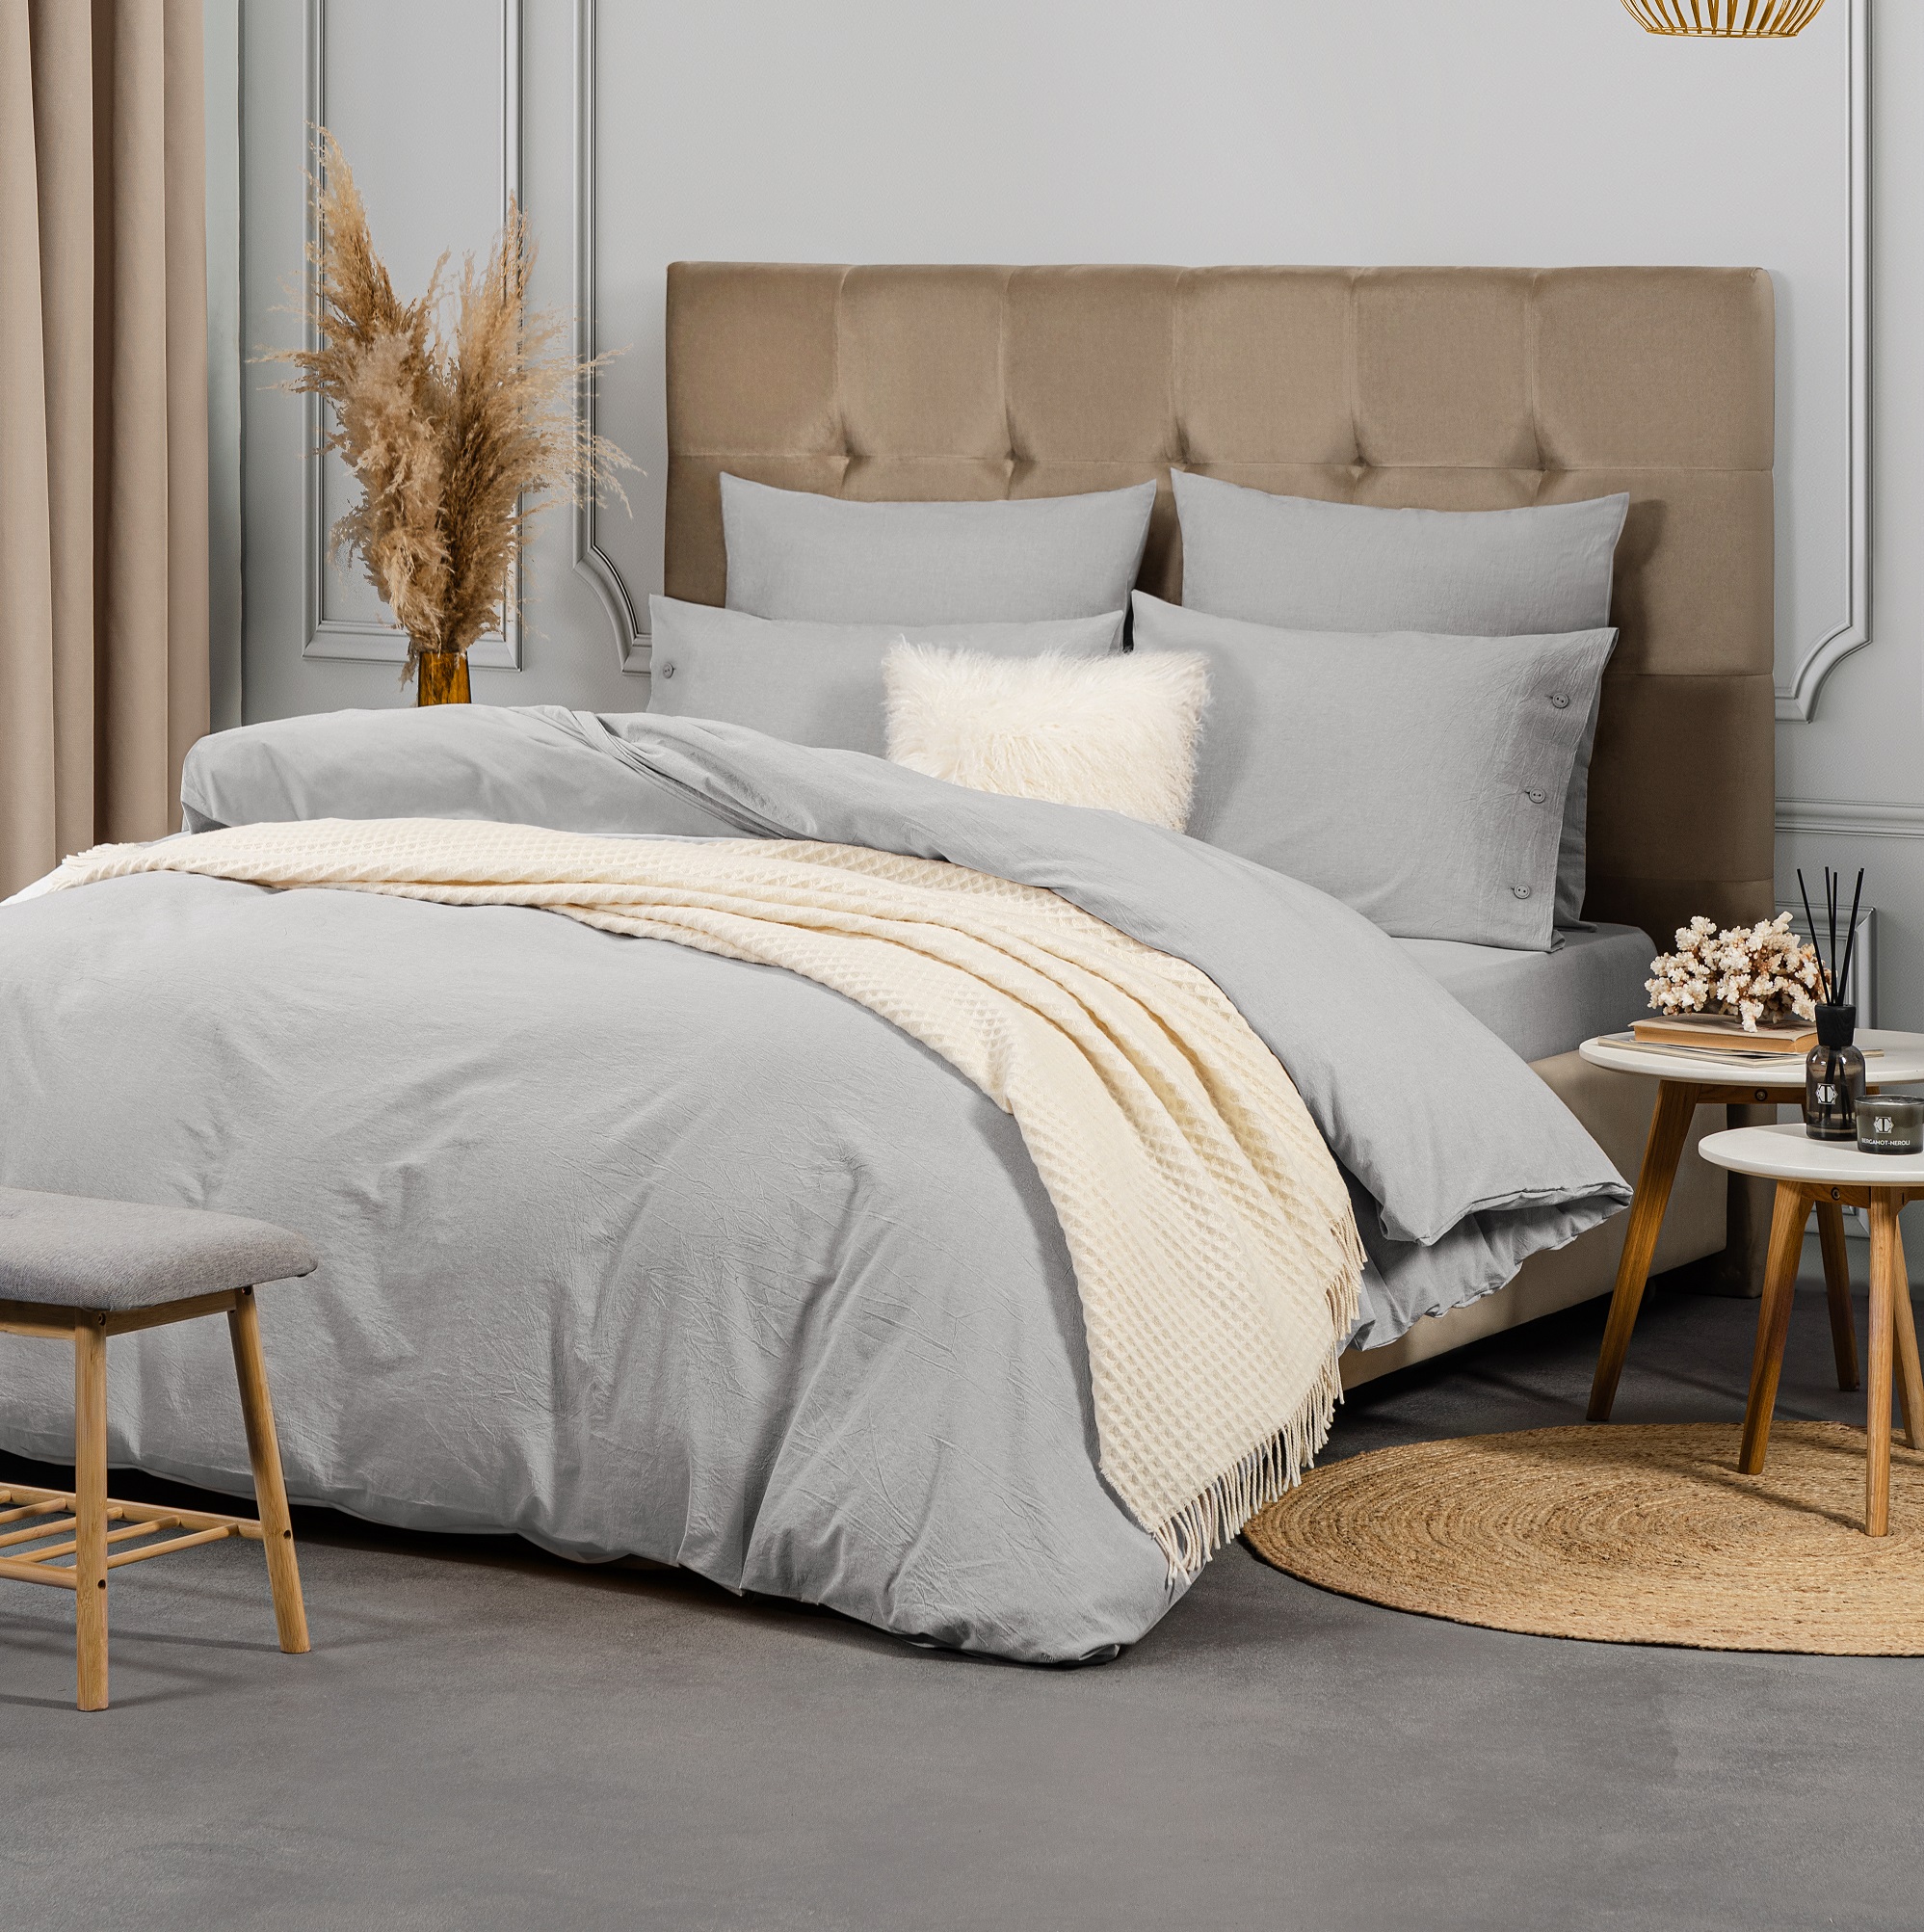 Комплект постельного белья Prime Prive Смоген Двуспальный кинг сайз светло-серый, размер Кинг сайз - фото 2